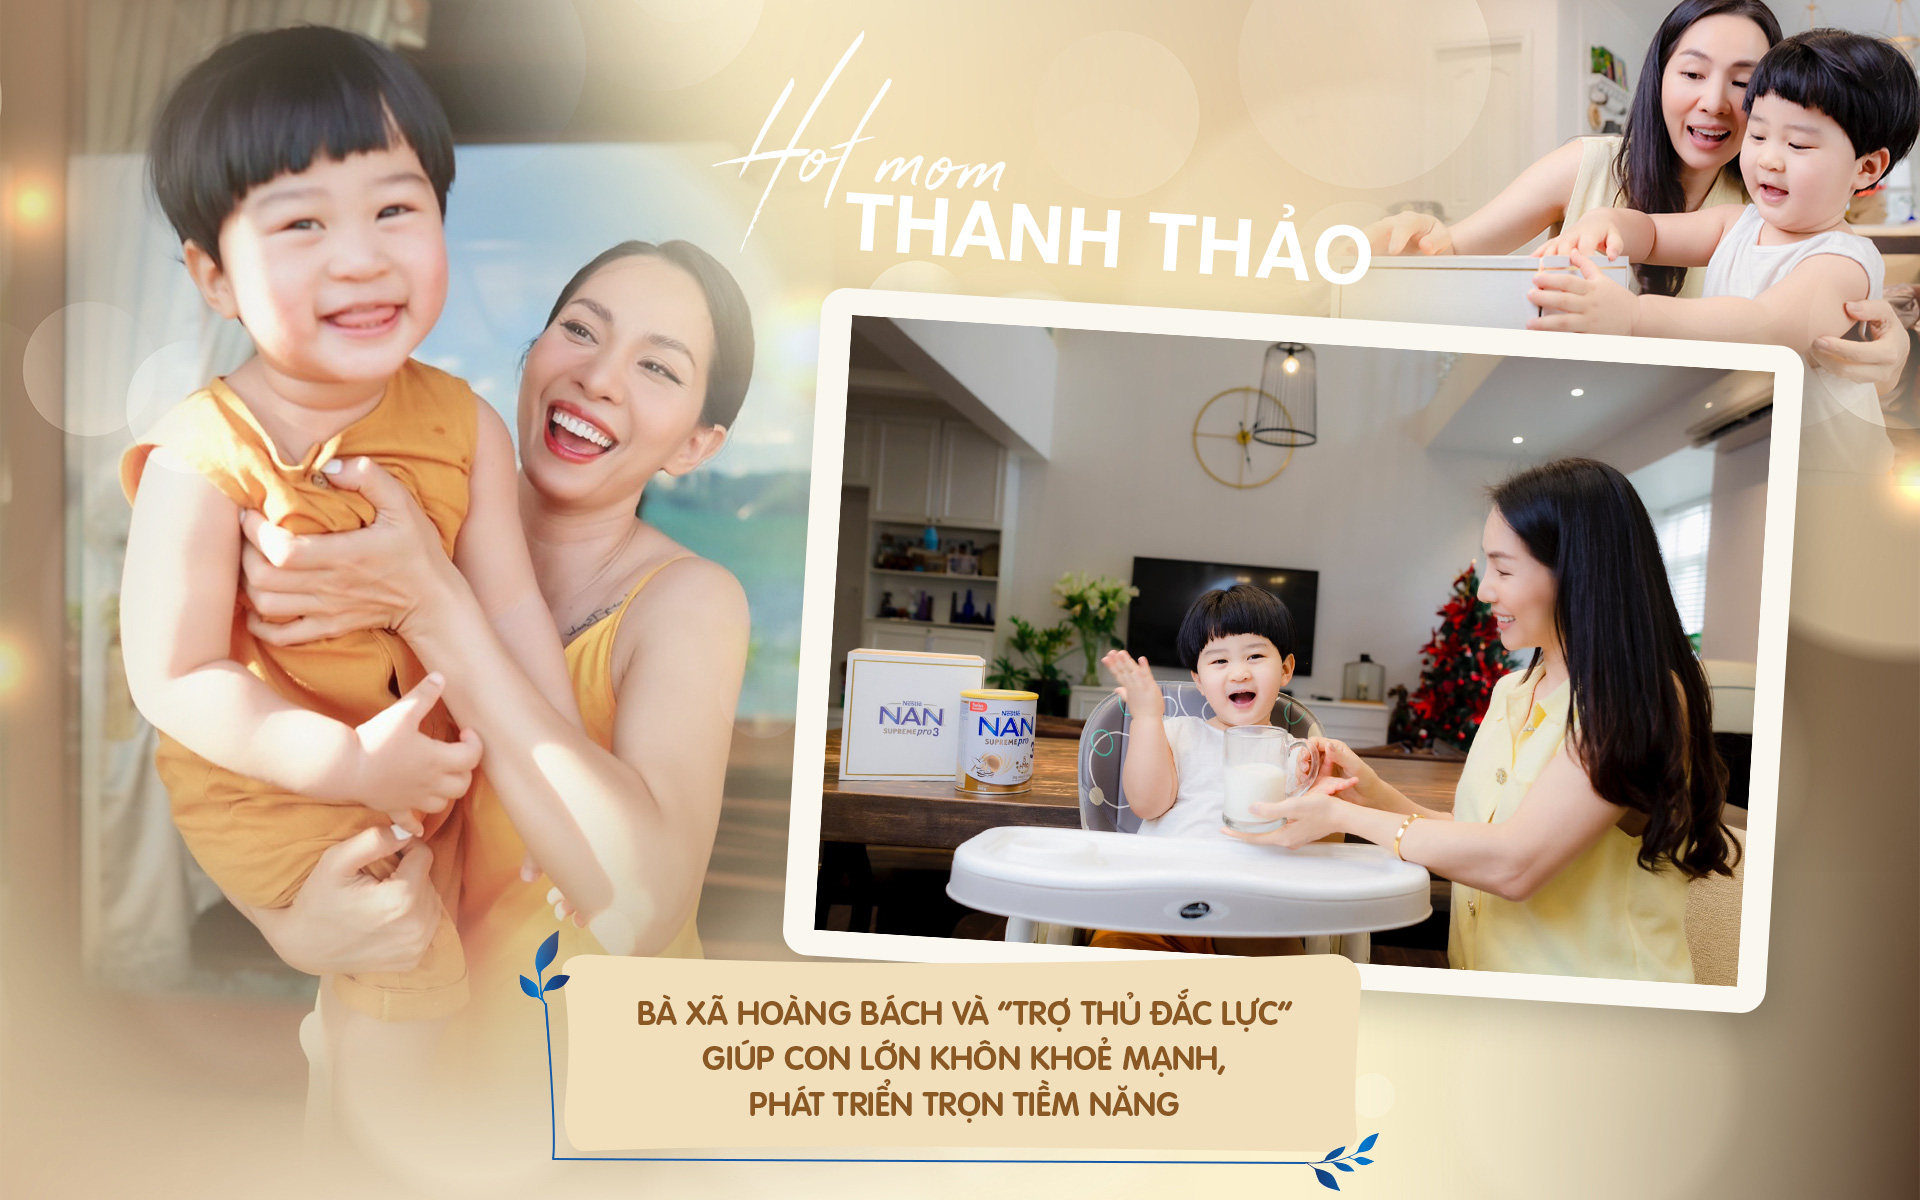 Hotmom Thanh Thảo: Bà xã Hoàng Bách và &quot;trợ thủ đắc lực&quot; giúp con lớn khôn khỏe mạnh, phát triển trọn tiềm năng